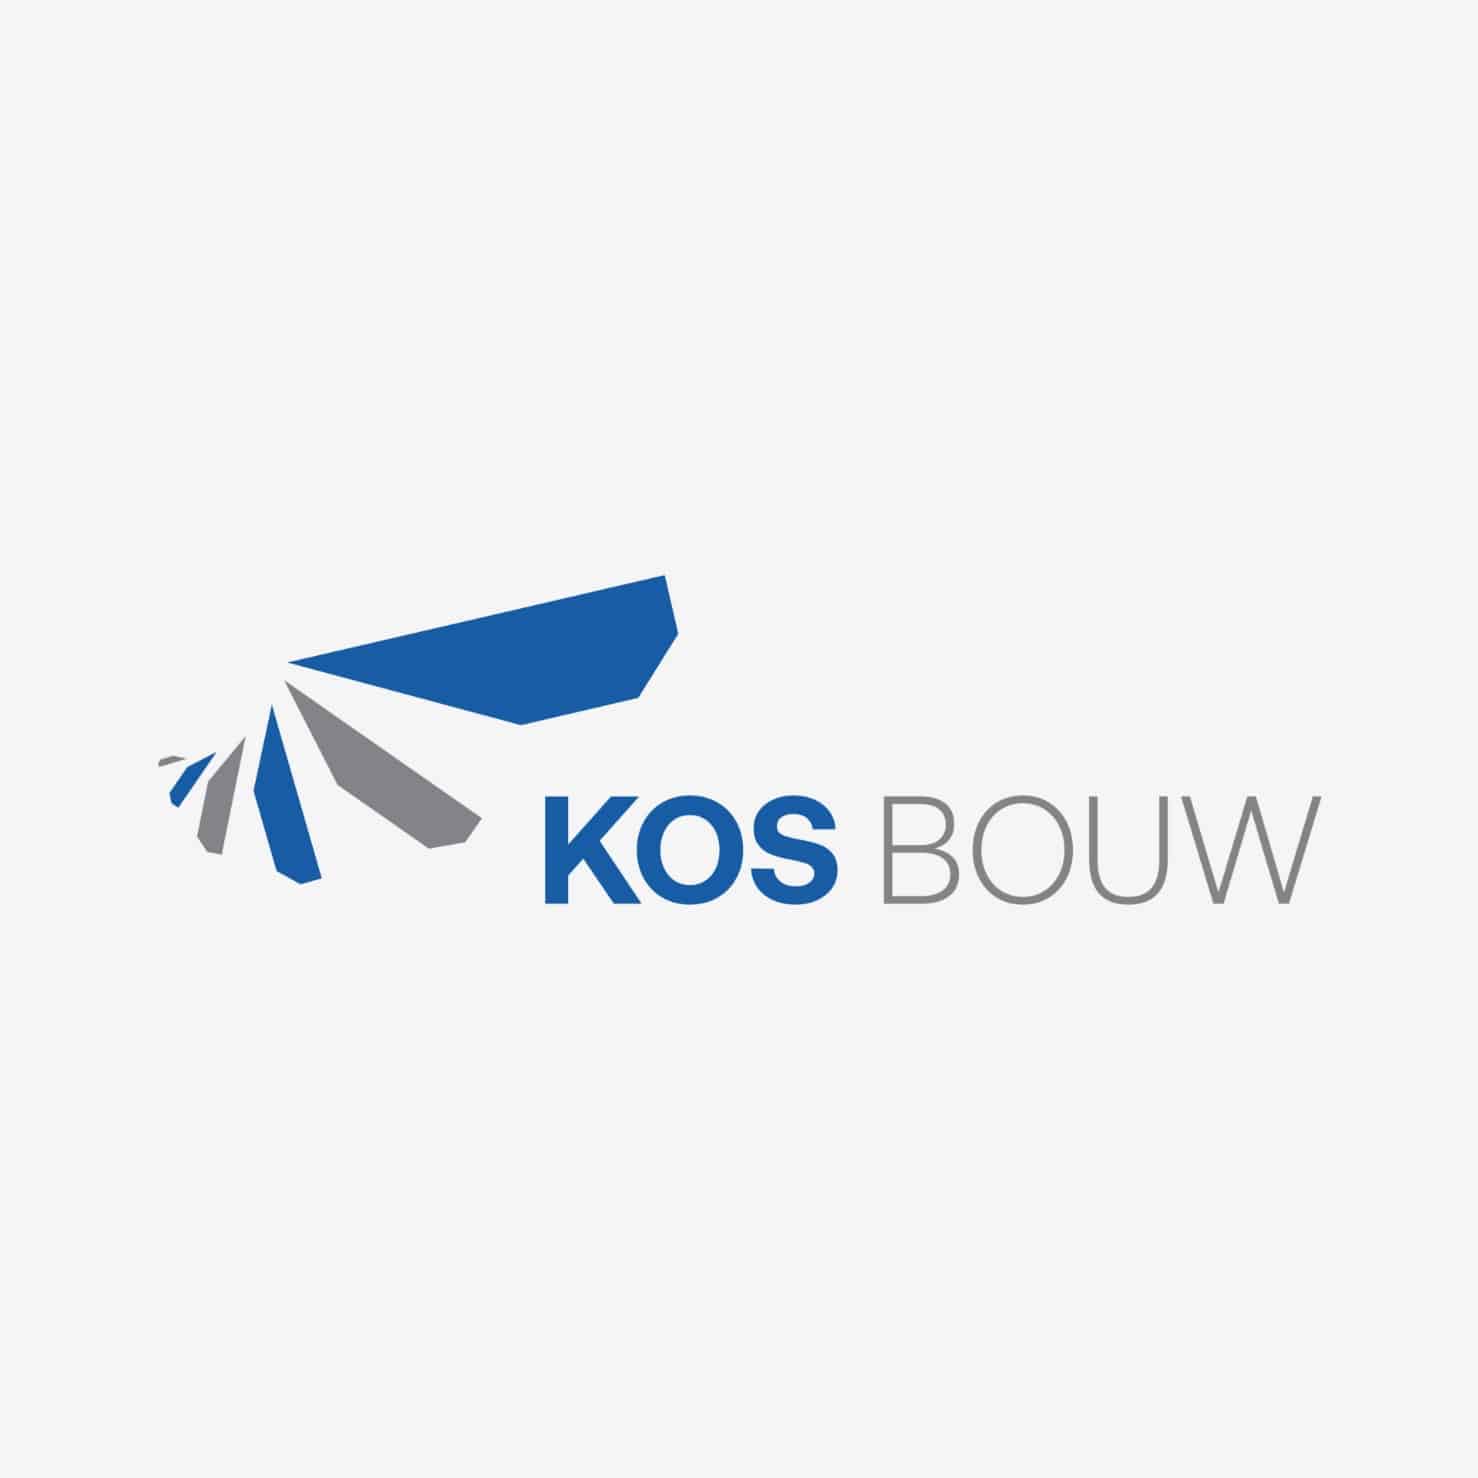 KOS bouw logo